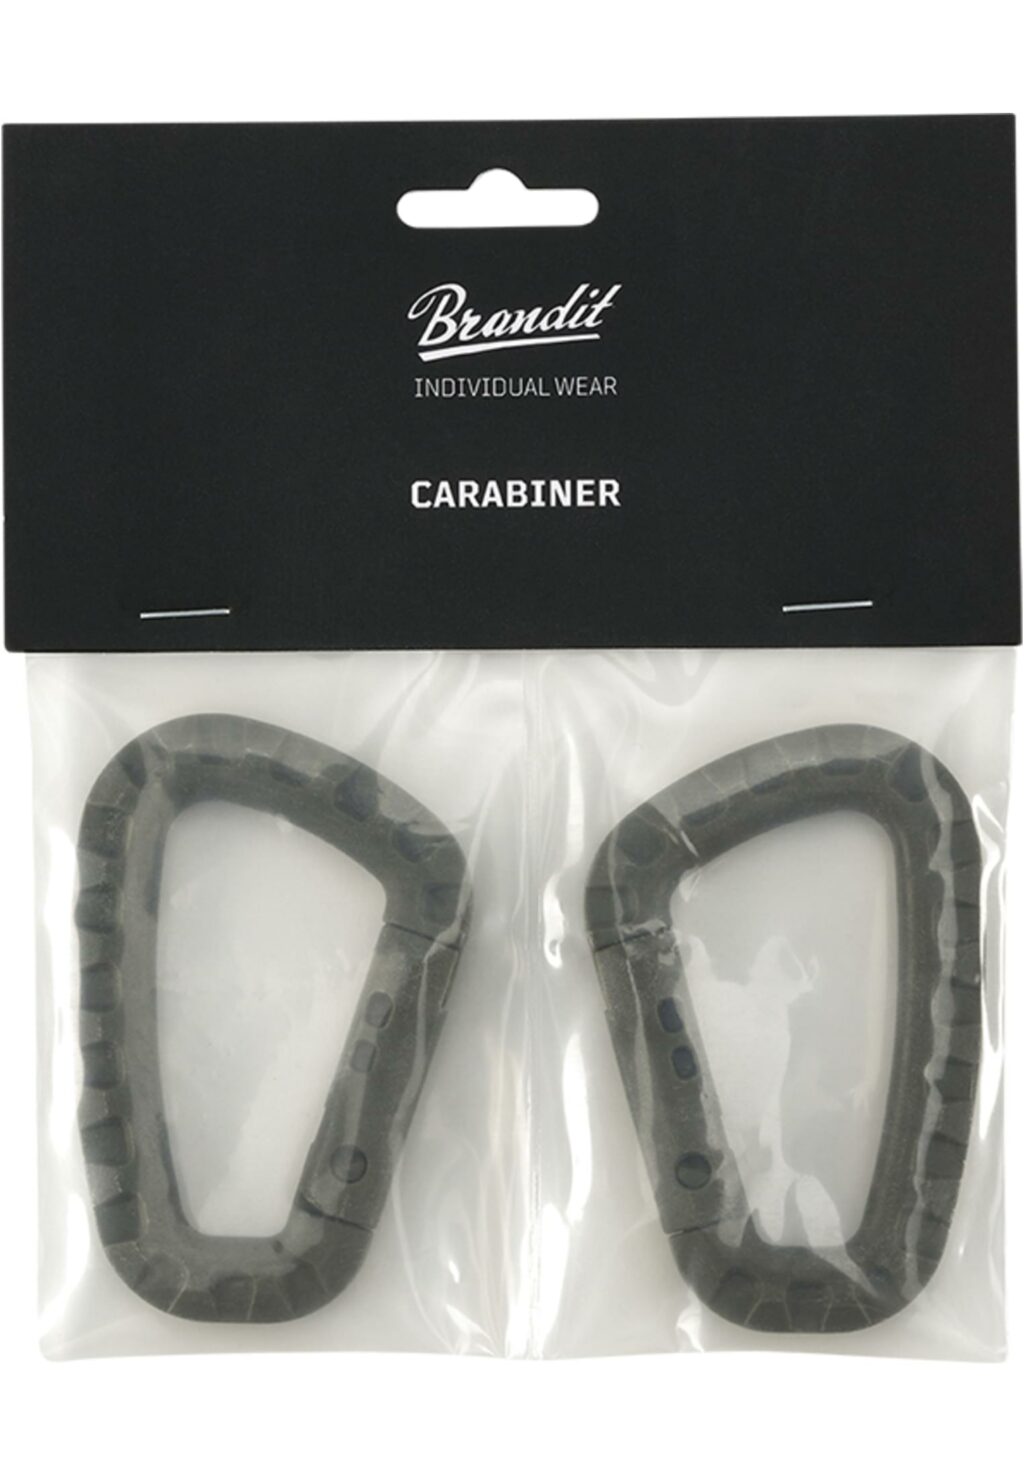 Brandit Carabiner 2-Pack olive one BD8079